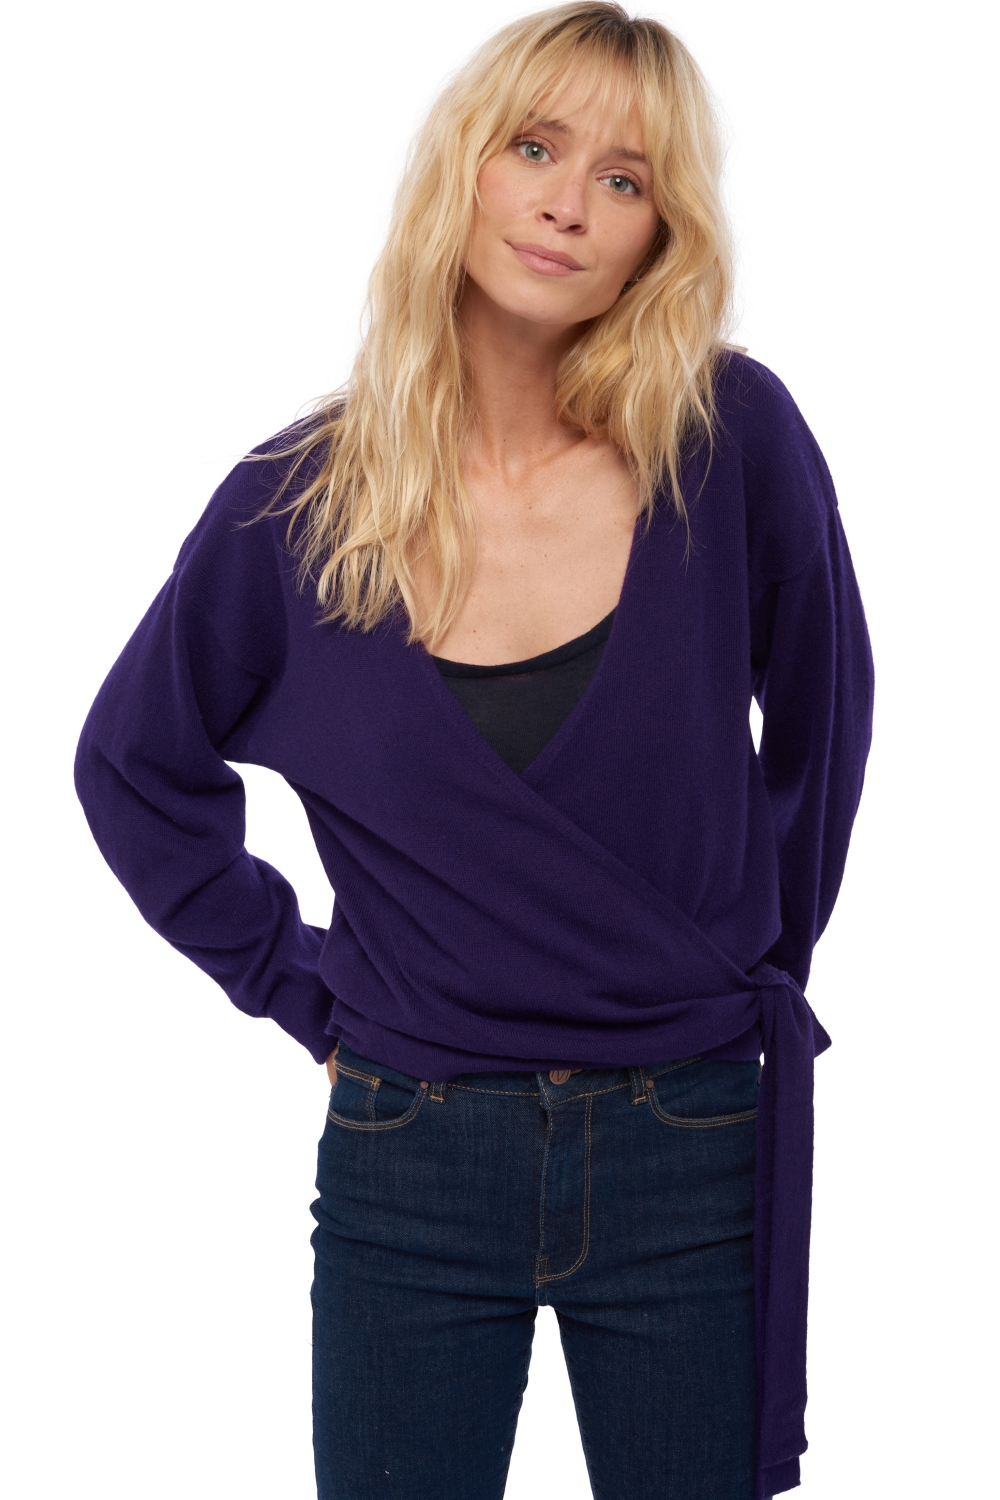 Cashmere kaschmir pullover damen antalya deep purple xl